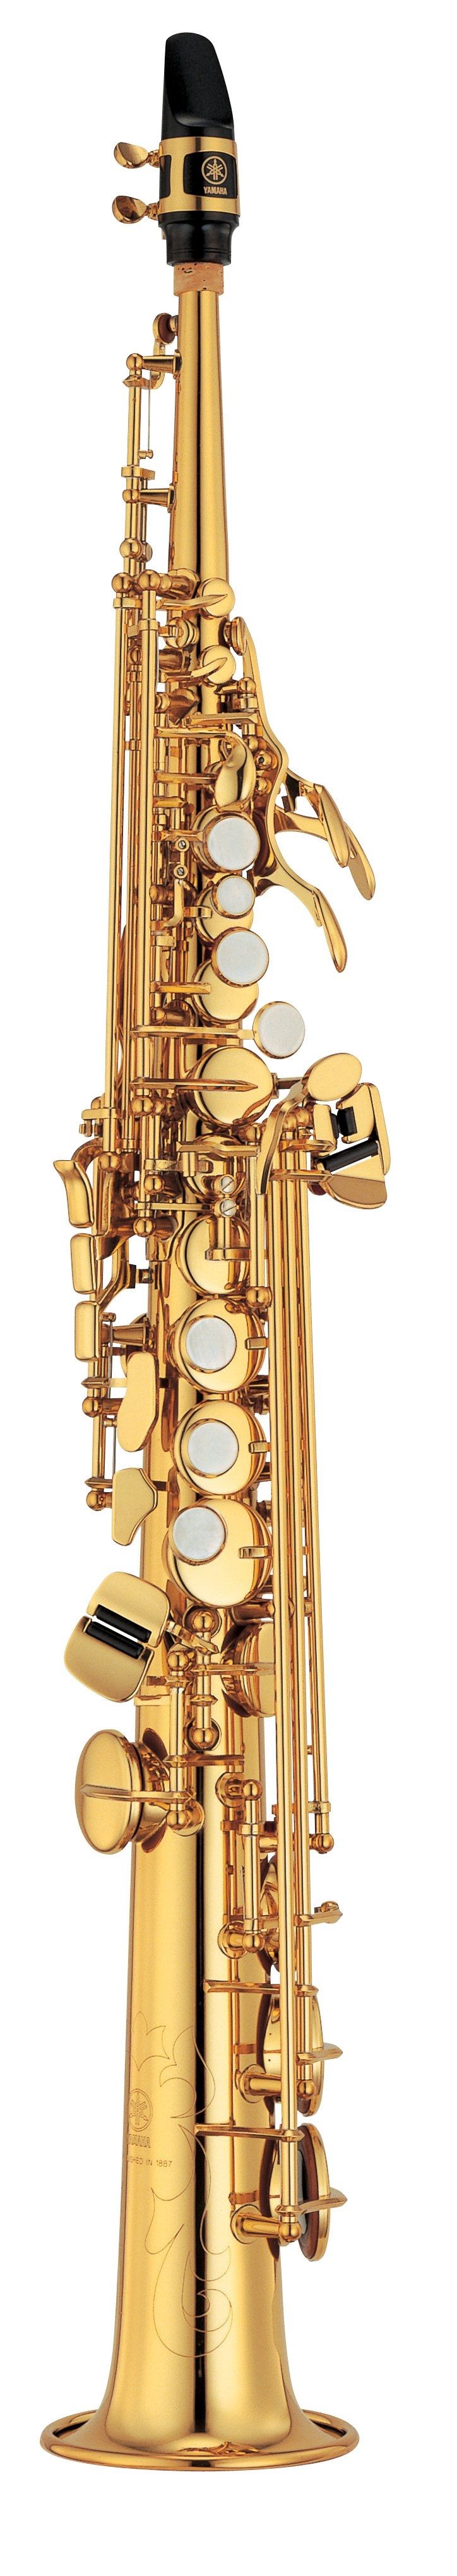 YSS-475II - Overview - Saxophones - Brass & Woodwinds - Musical 